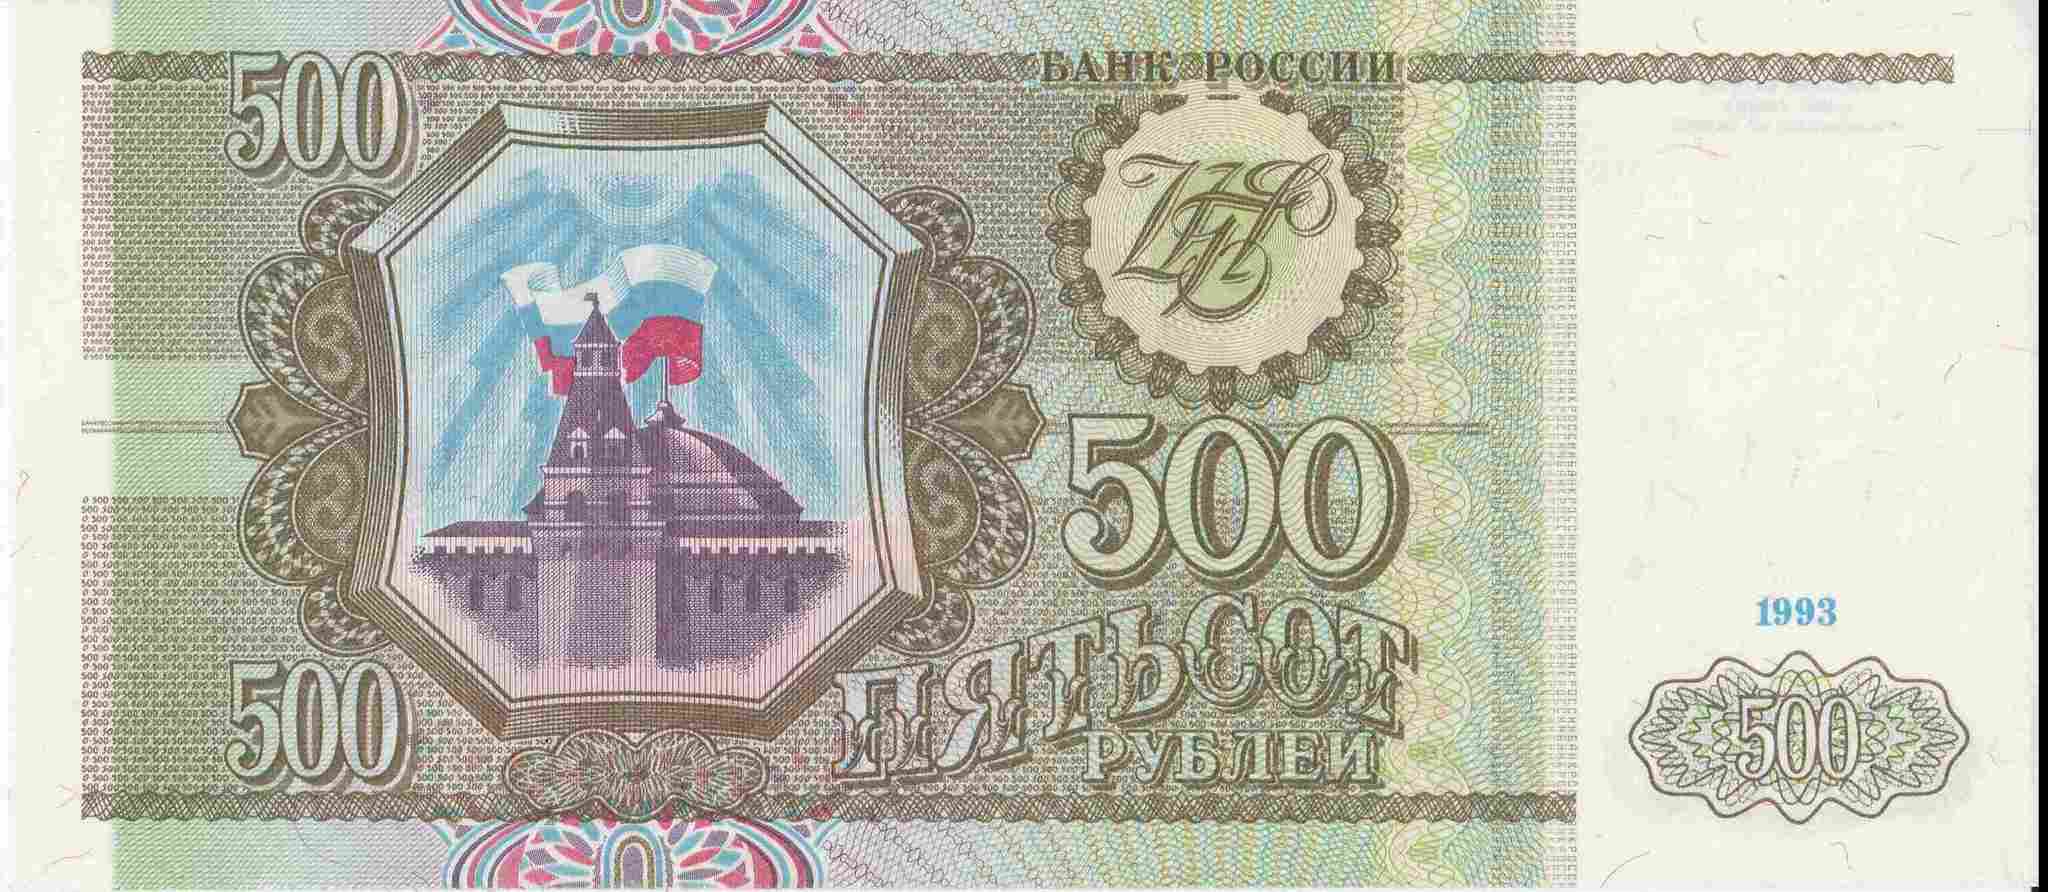 400 рублей россии. Купюра 500 рублей 1993. 500 Рублей 1993 АА. Пятьсот рублей 1993 года. 500 Рублей 1993 бумажные.